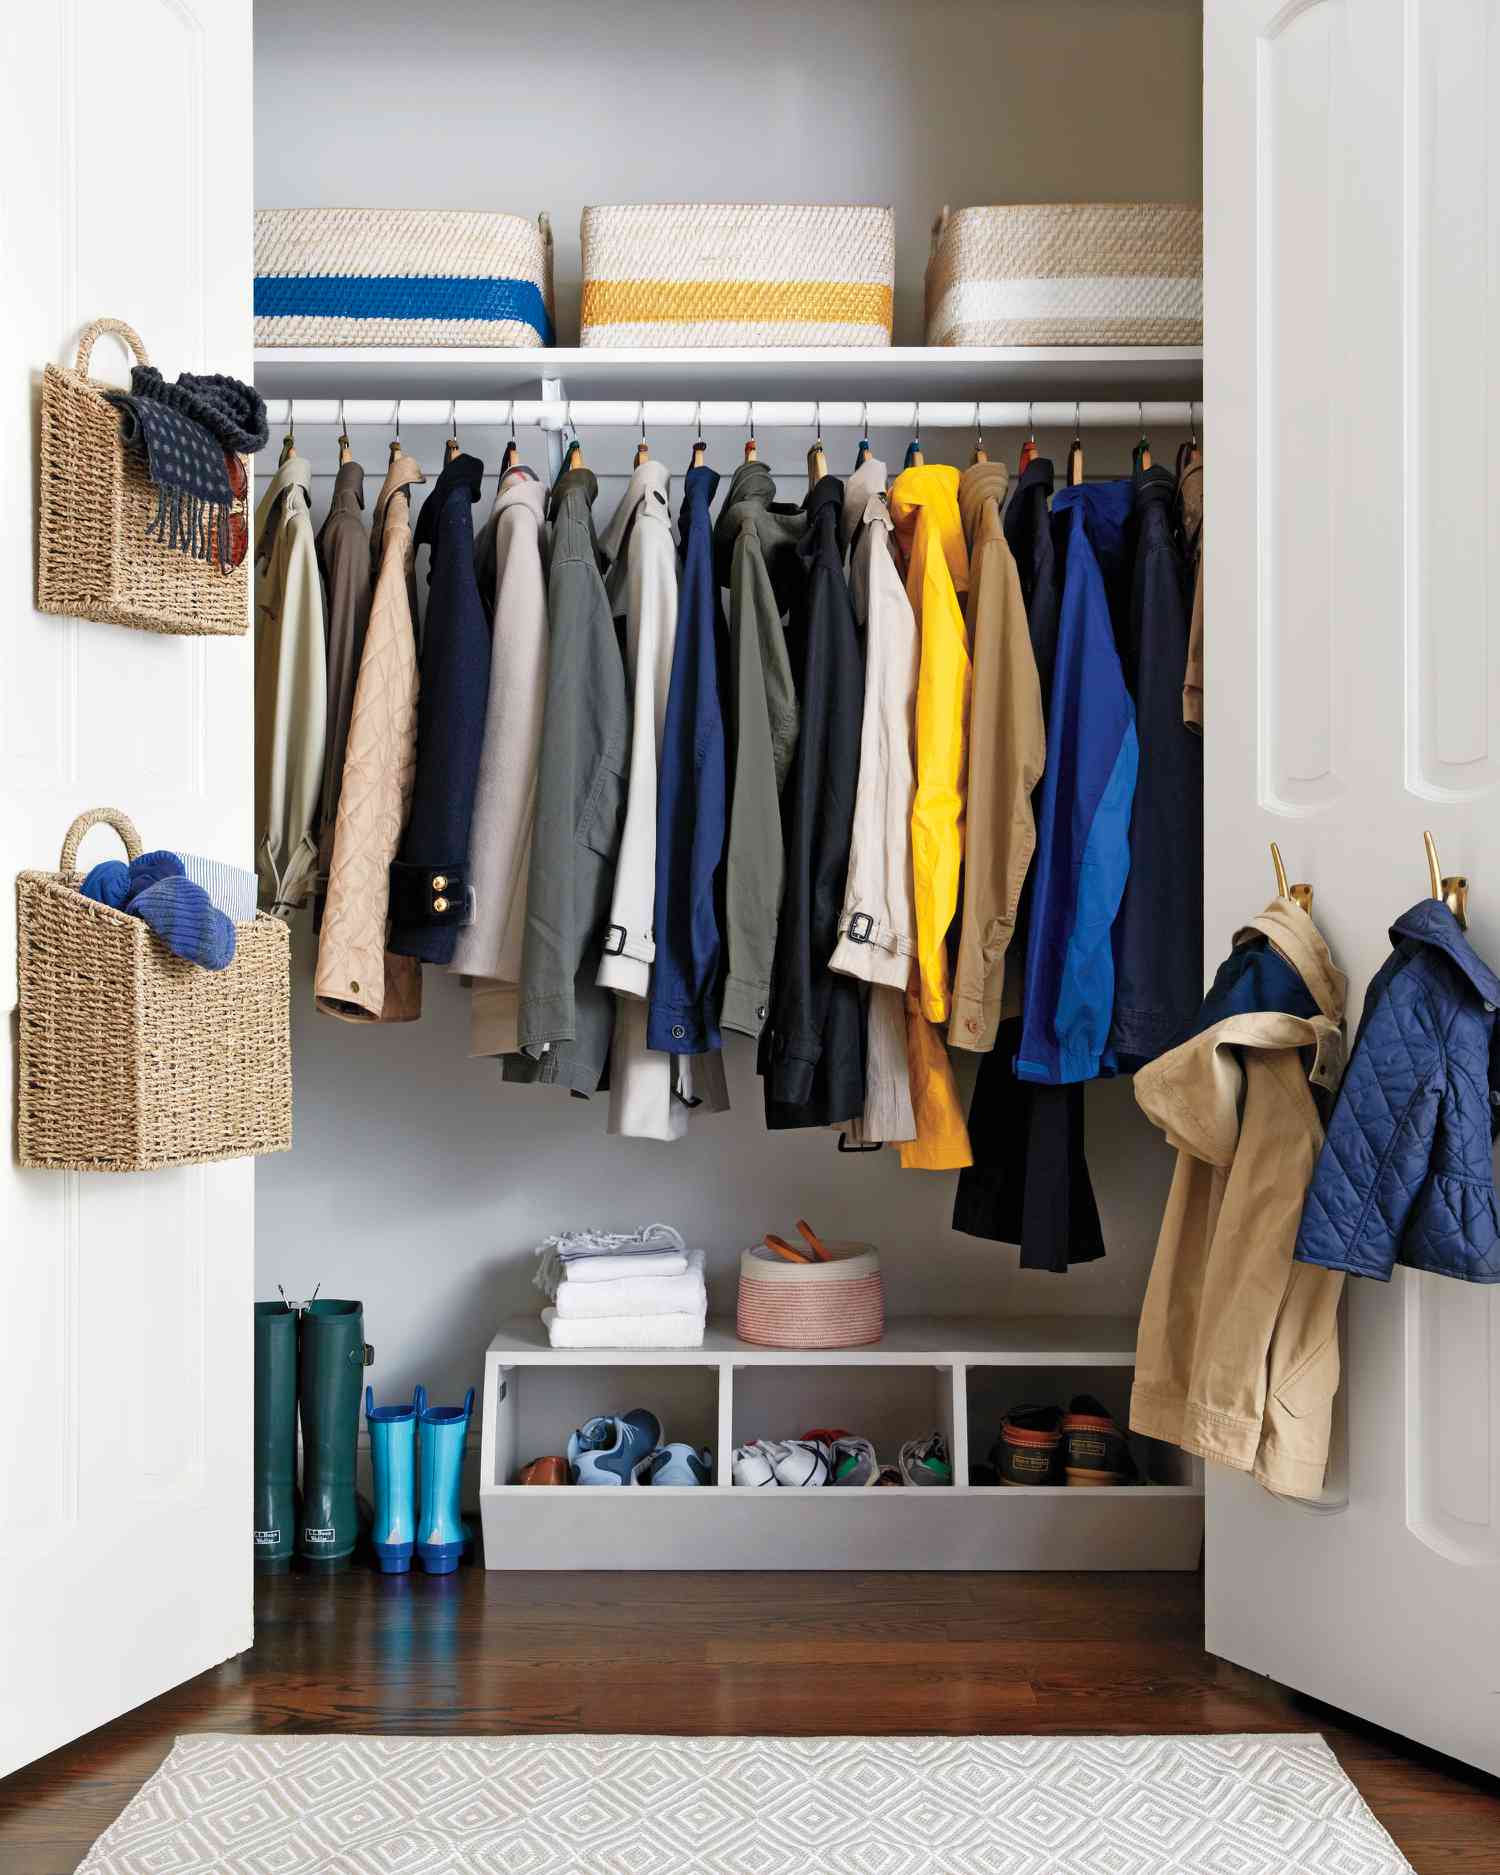 How To Organize A Deep Closet Martha, Organising Closet Shelves